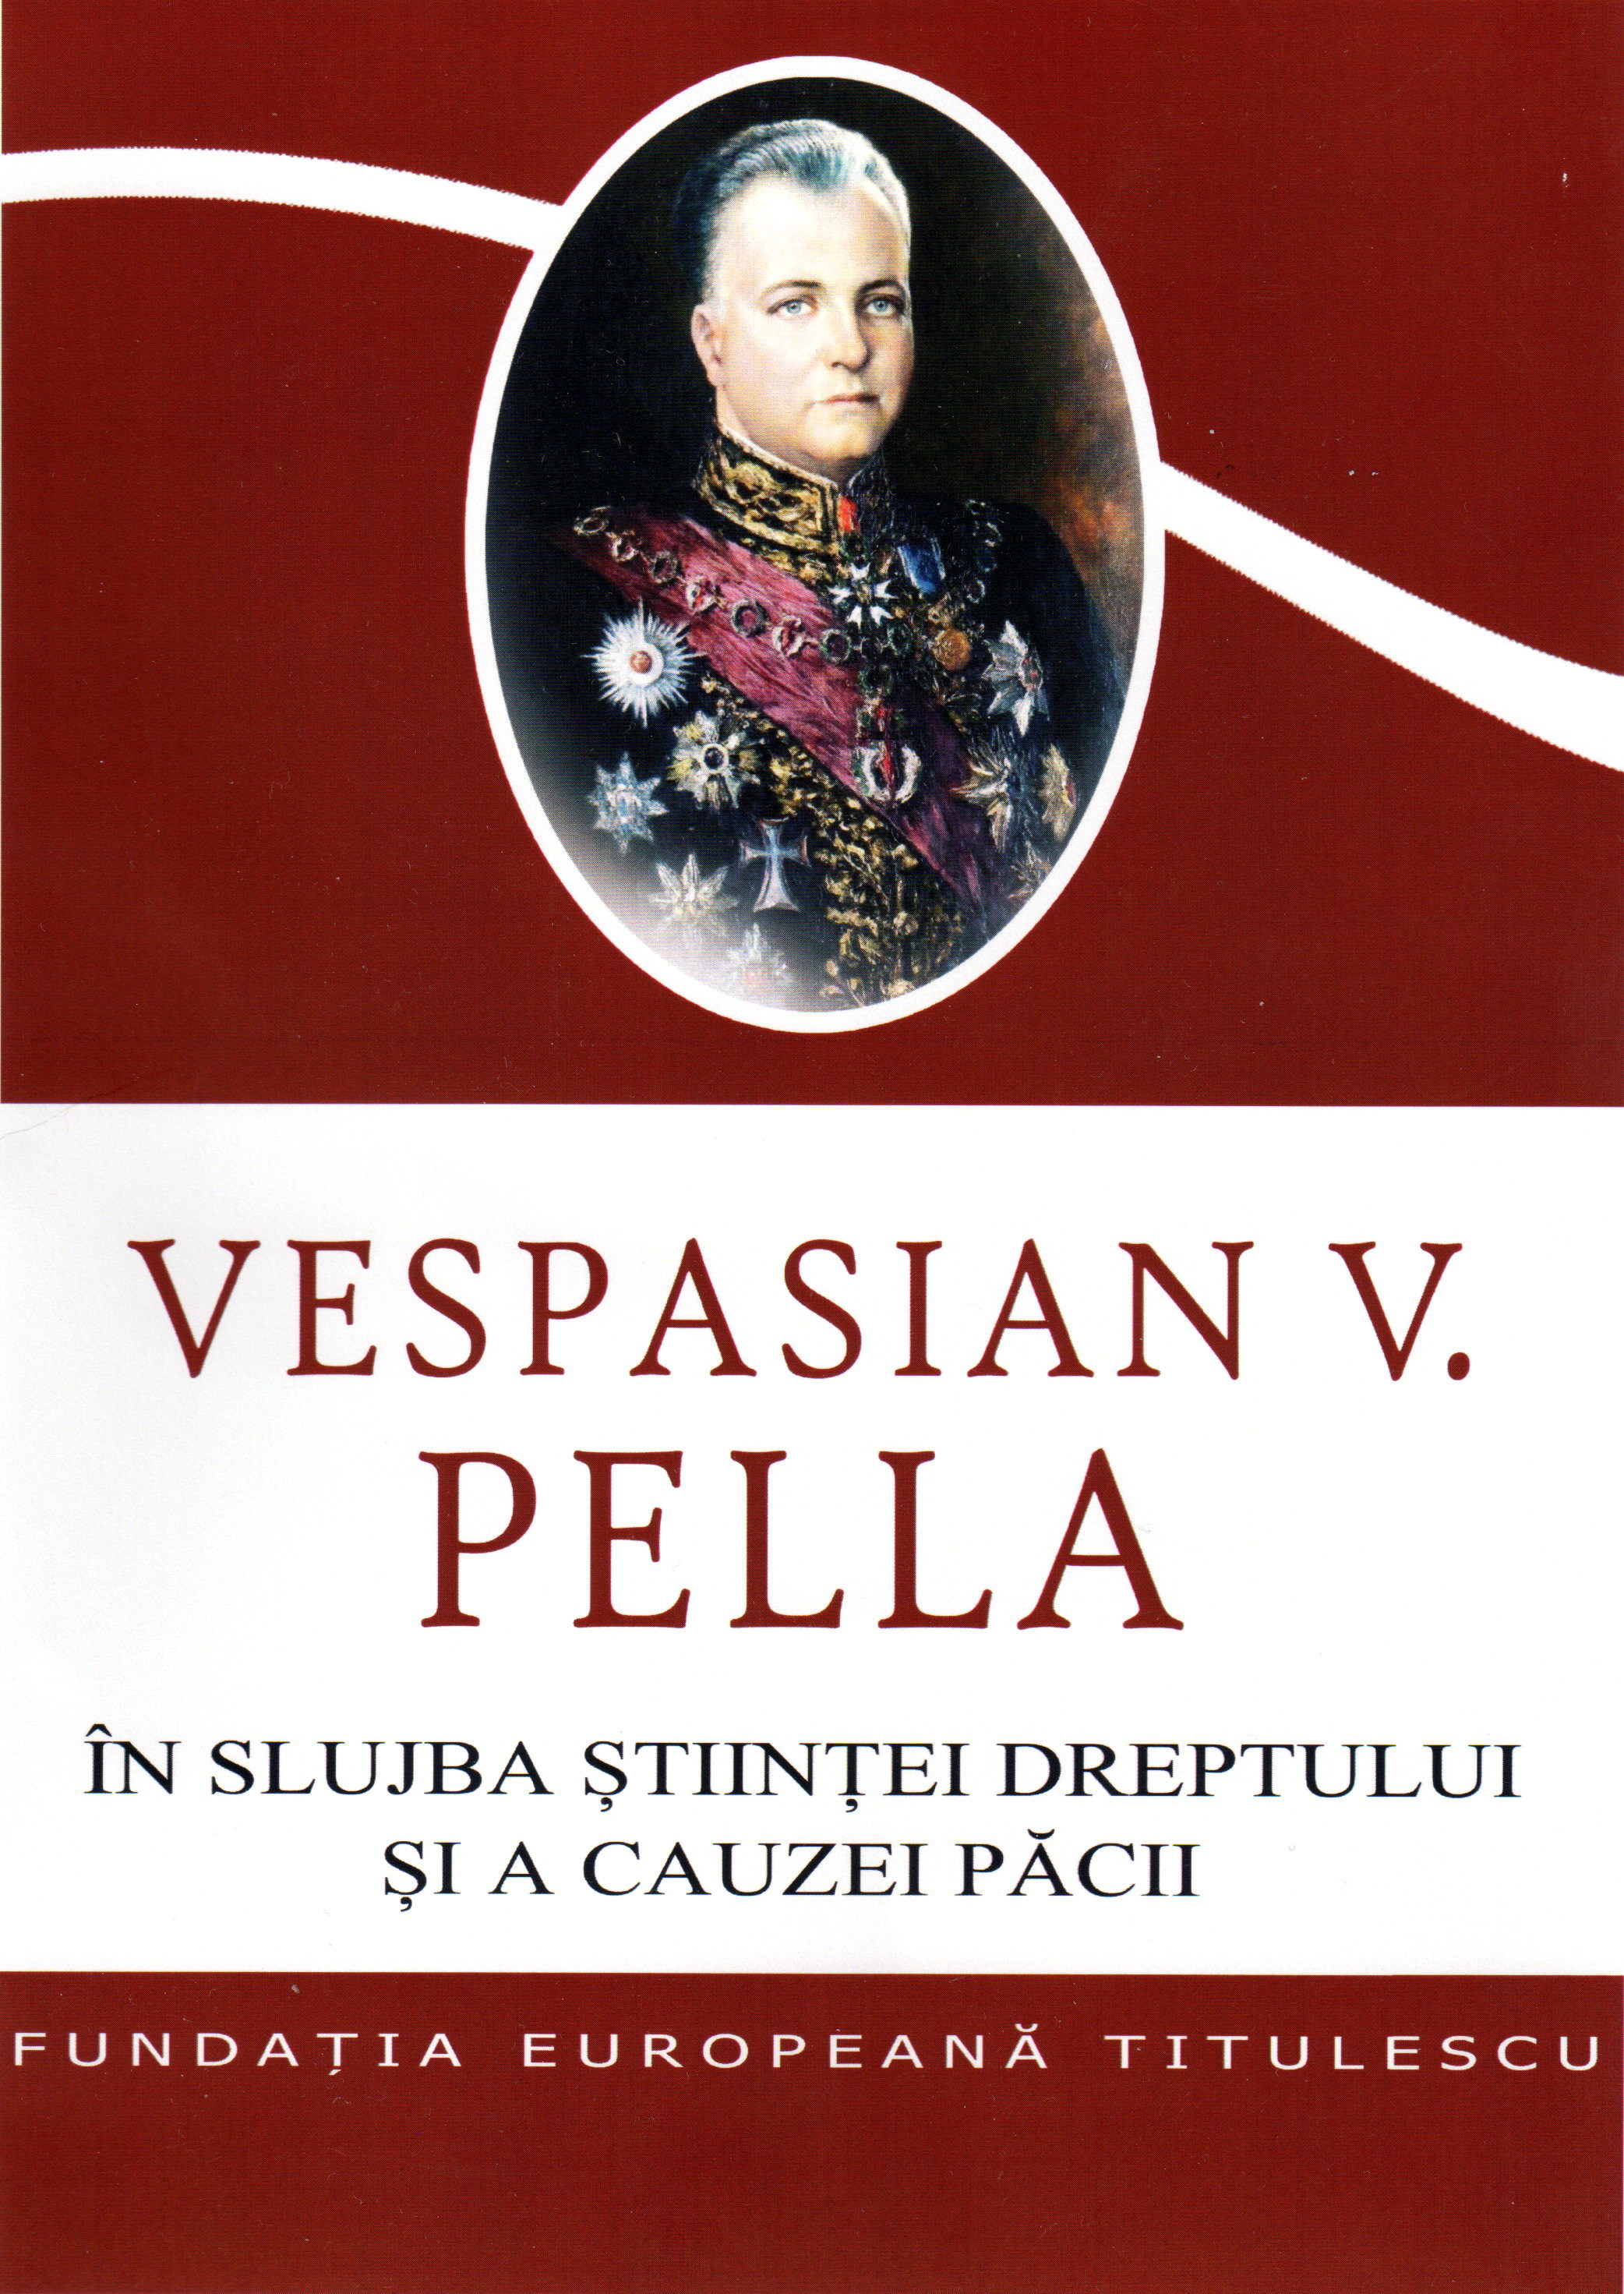 Istorici şi diplomaţi (XXII). Un „vizionar”: Vespasian V. Pella/ de dr. Alexandru Popescu